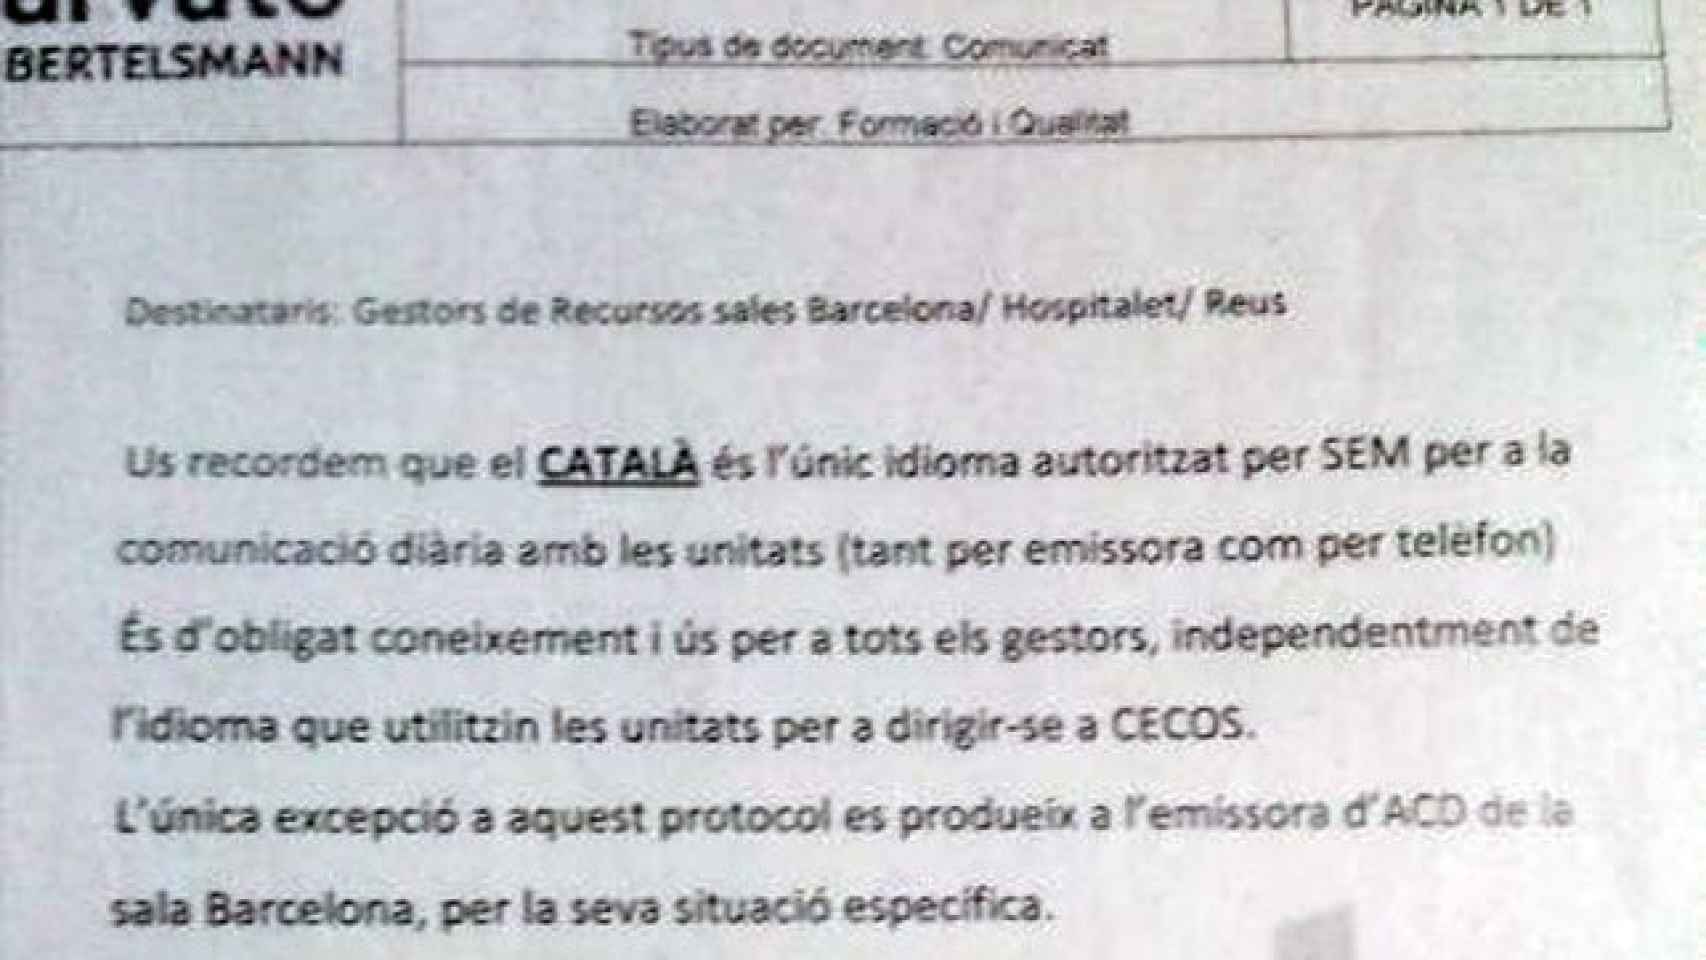 Circular enviada a los operadores de los centros de coordinación de urgencias médicas ordenándoles utilizar exclusivamente el catalán en todas sus comunicaciones